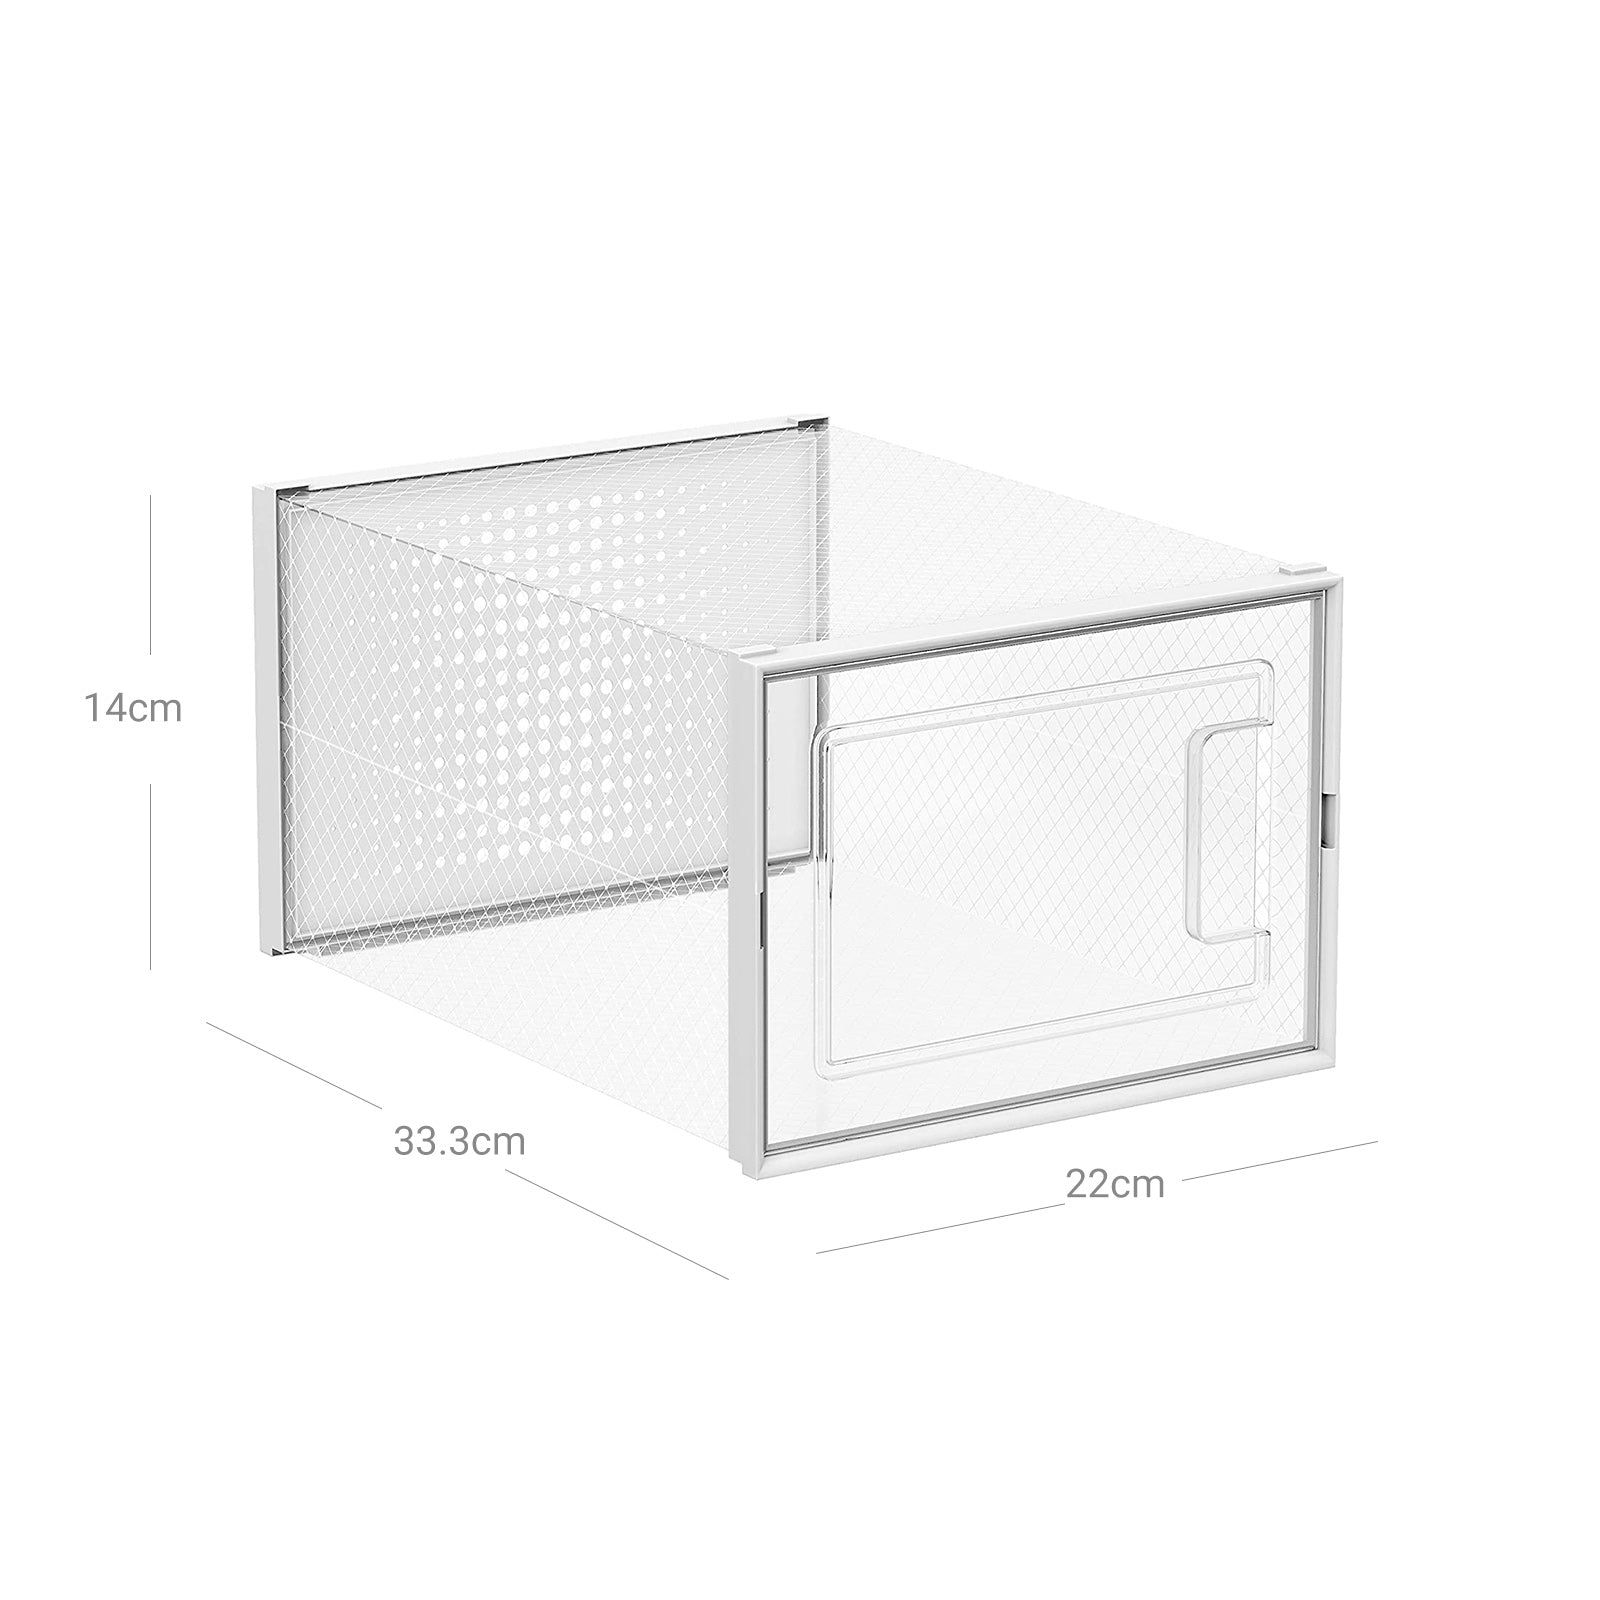 8er-Set Schuhbox Schuhorganizer 33,3 x 23 x 14 cm Weiß-Transparent